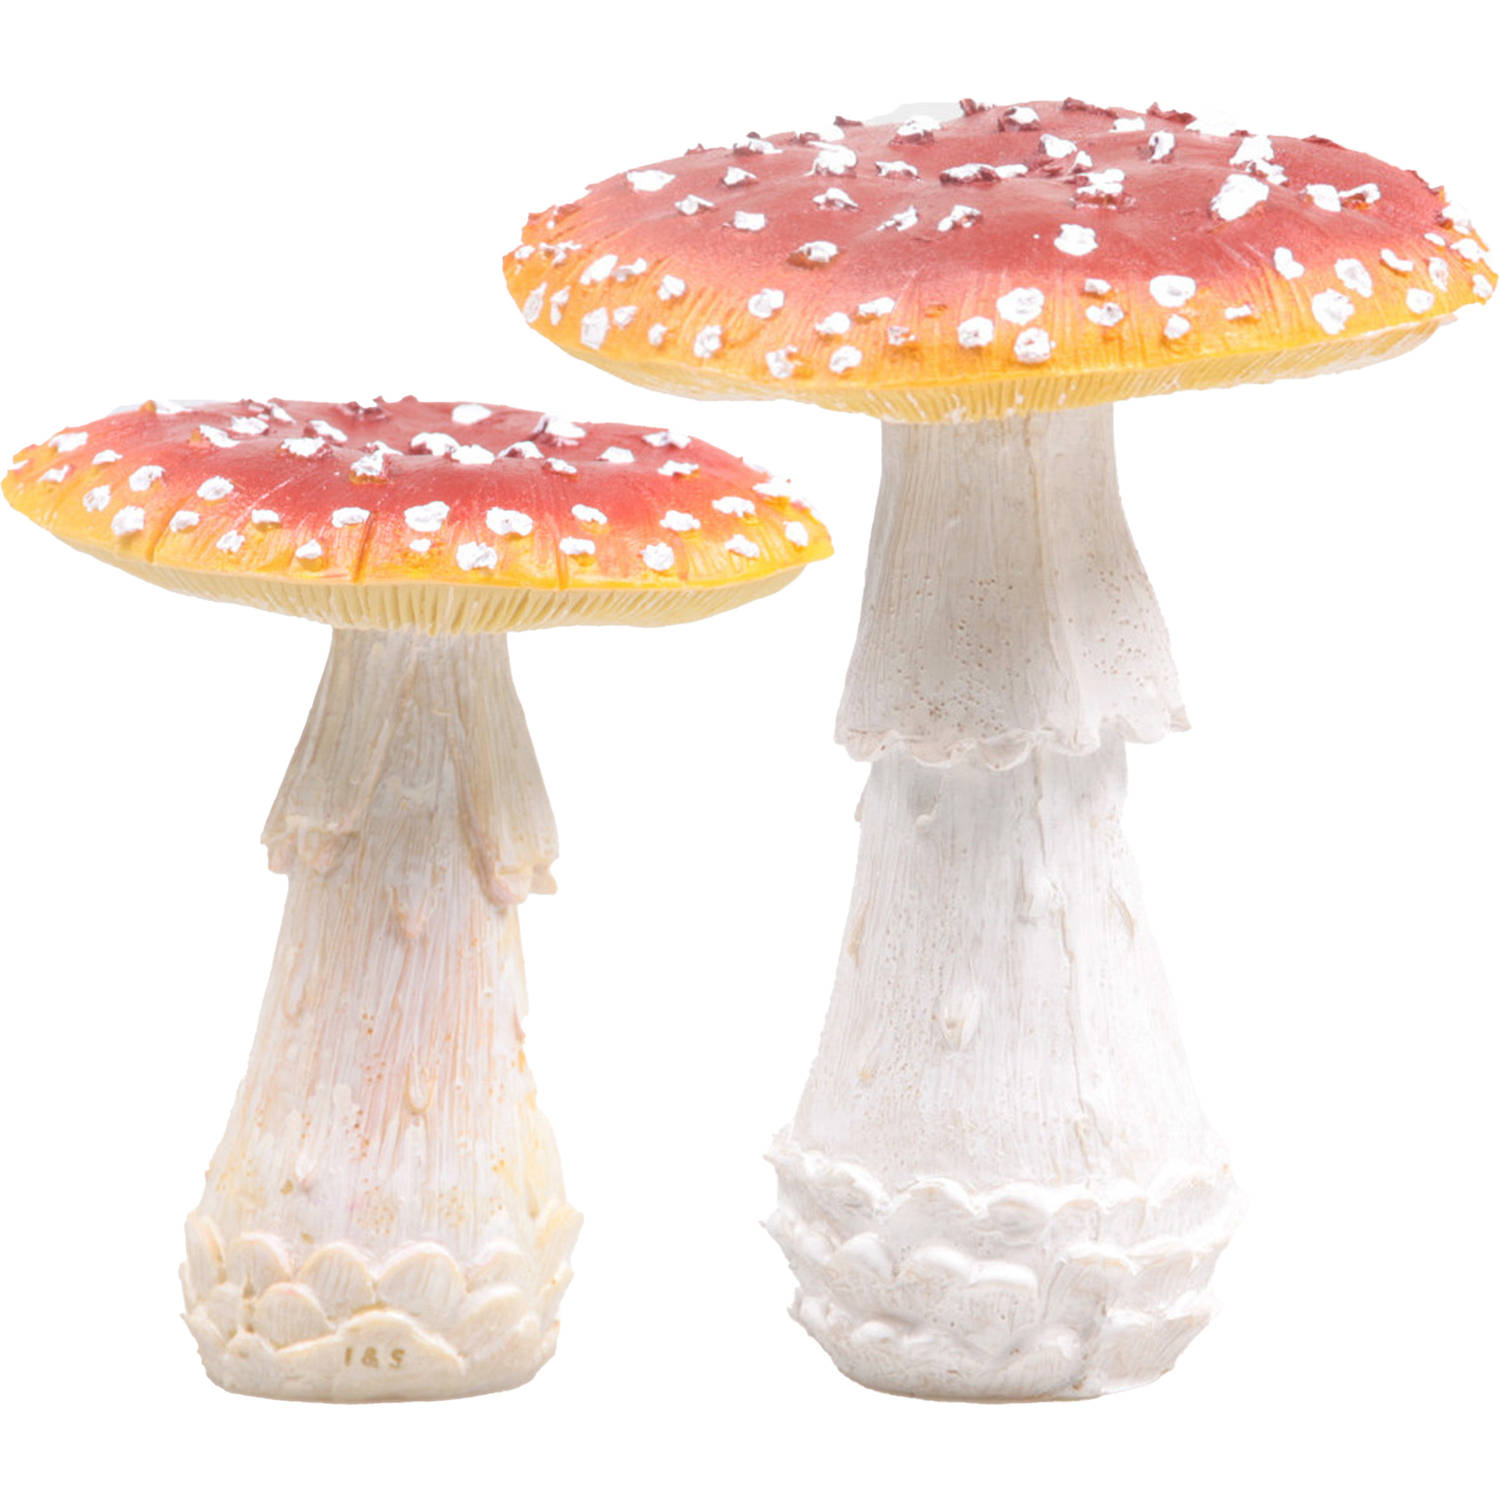 Decoratie paddenstoelen setje met 2x vliegenzwam paddenstoelen herfst thema Tuinbeelden